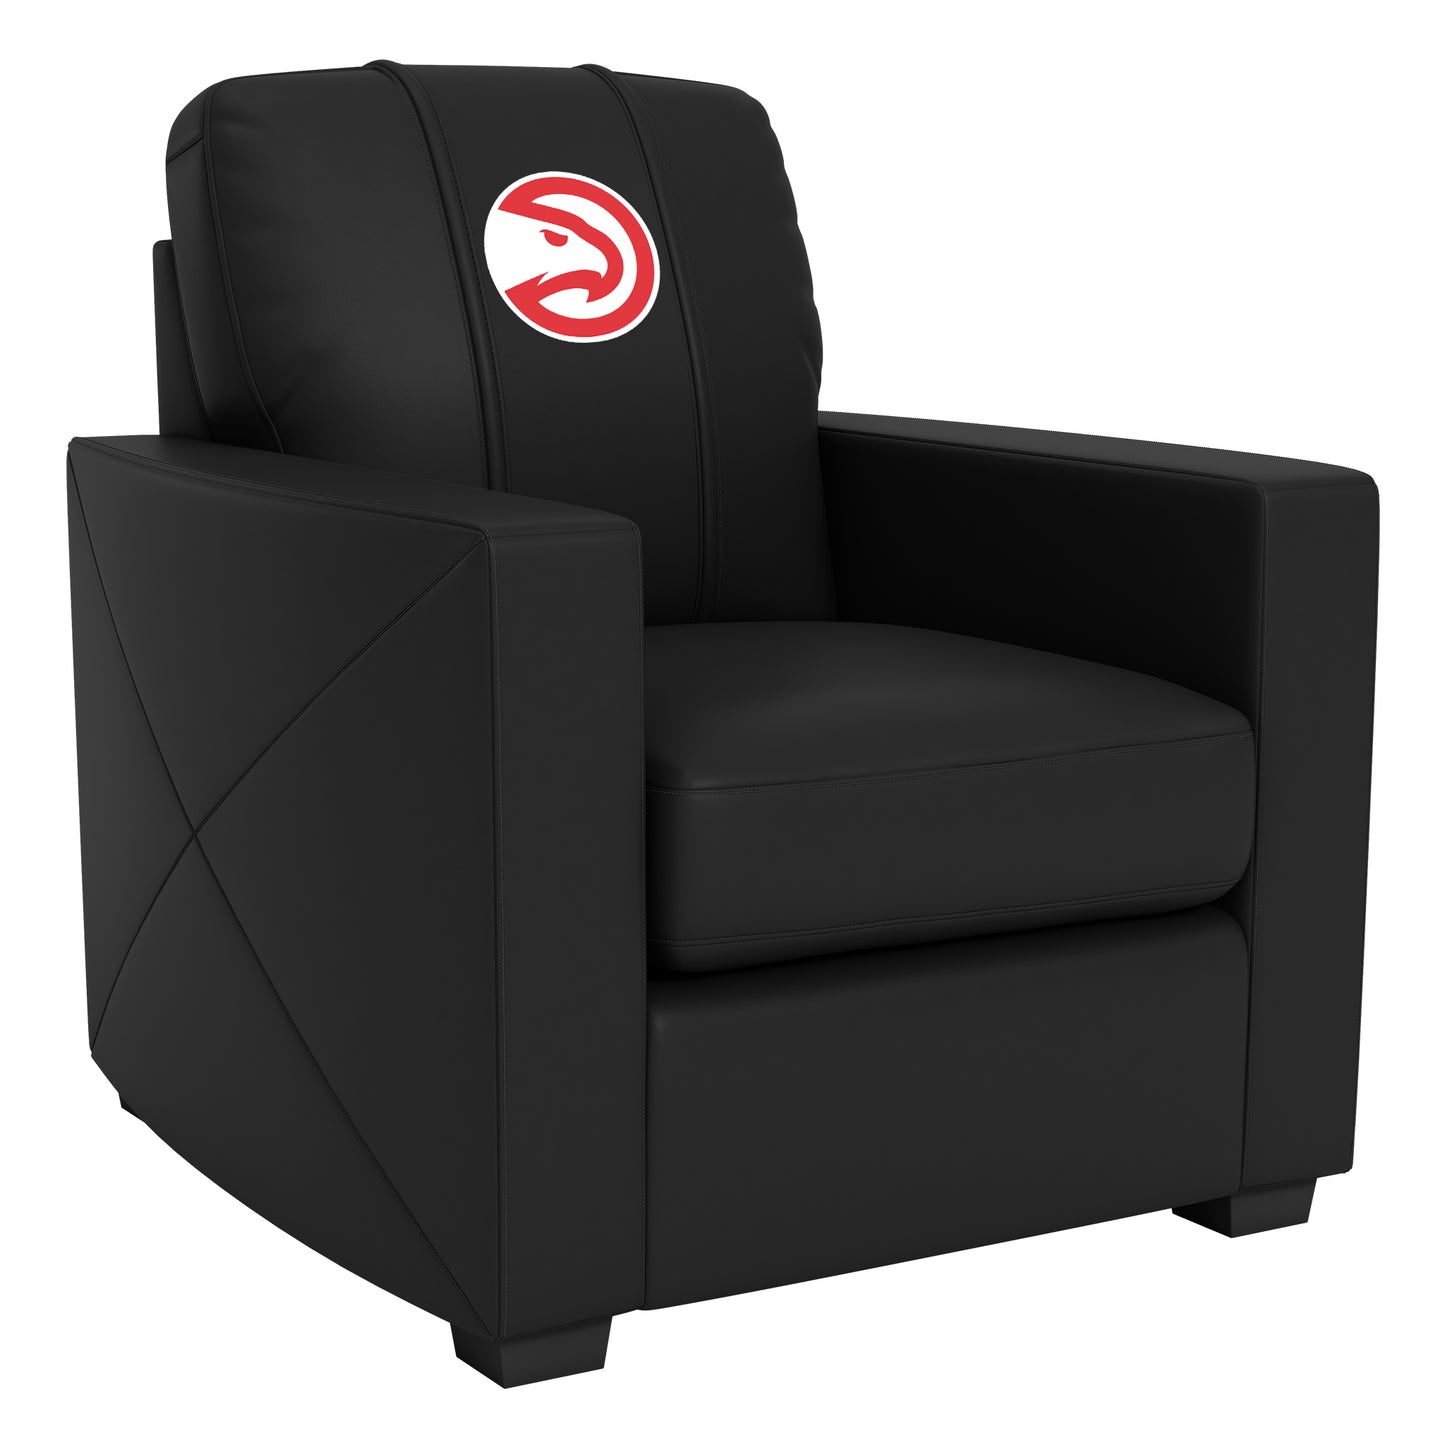 Silver Club Chair with Atlanta Hawks Logo